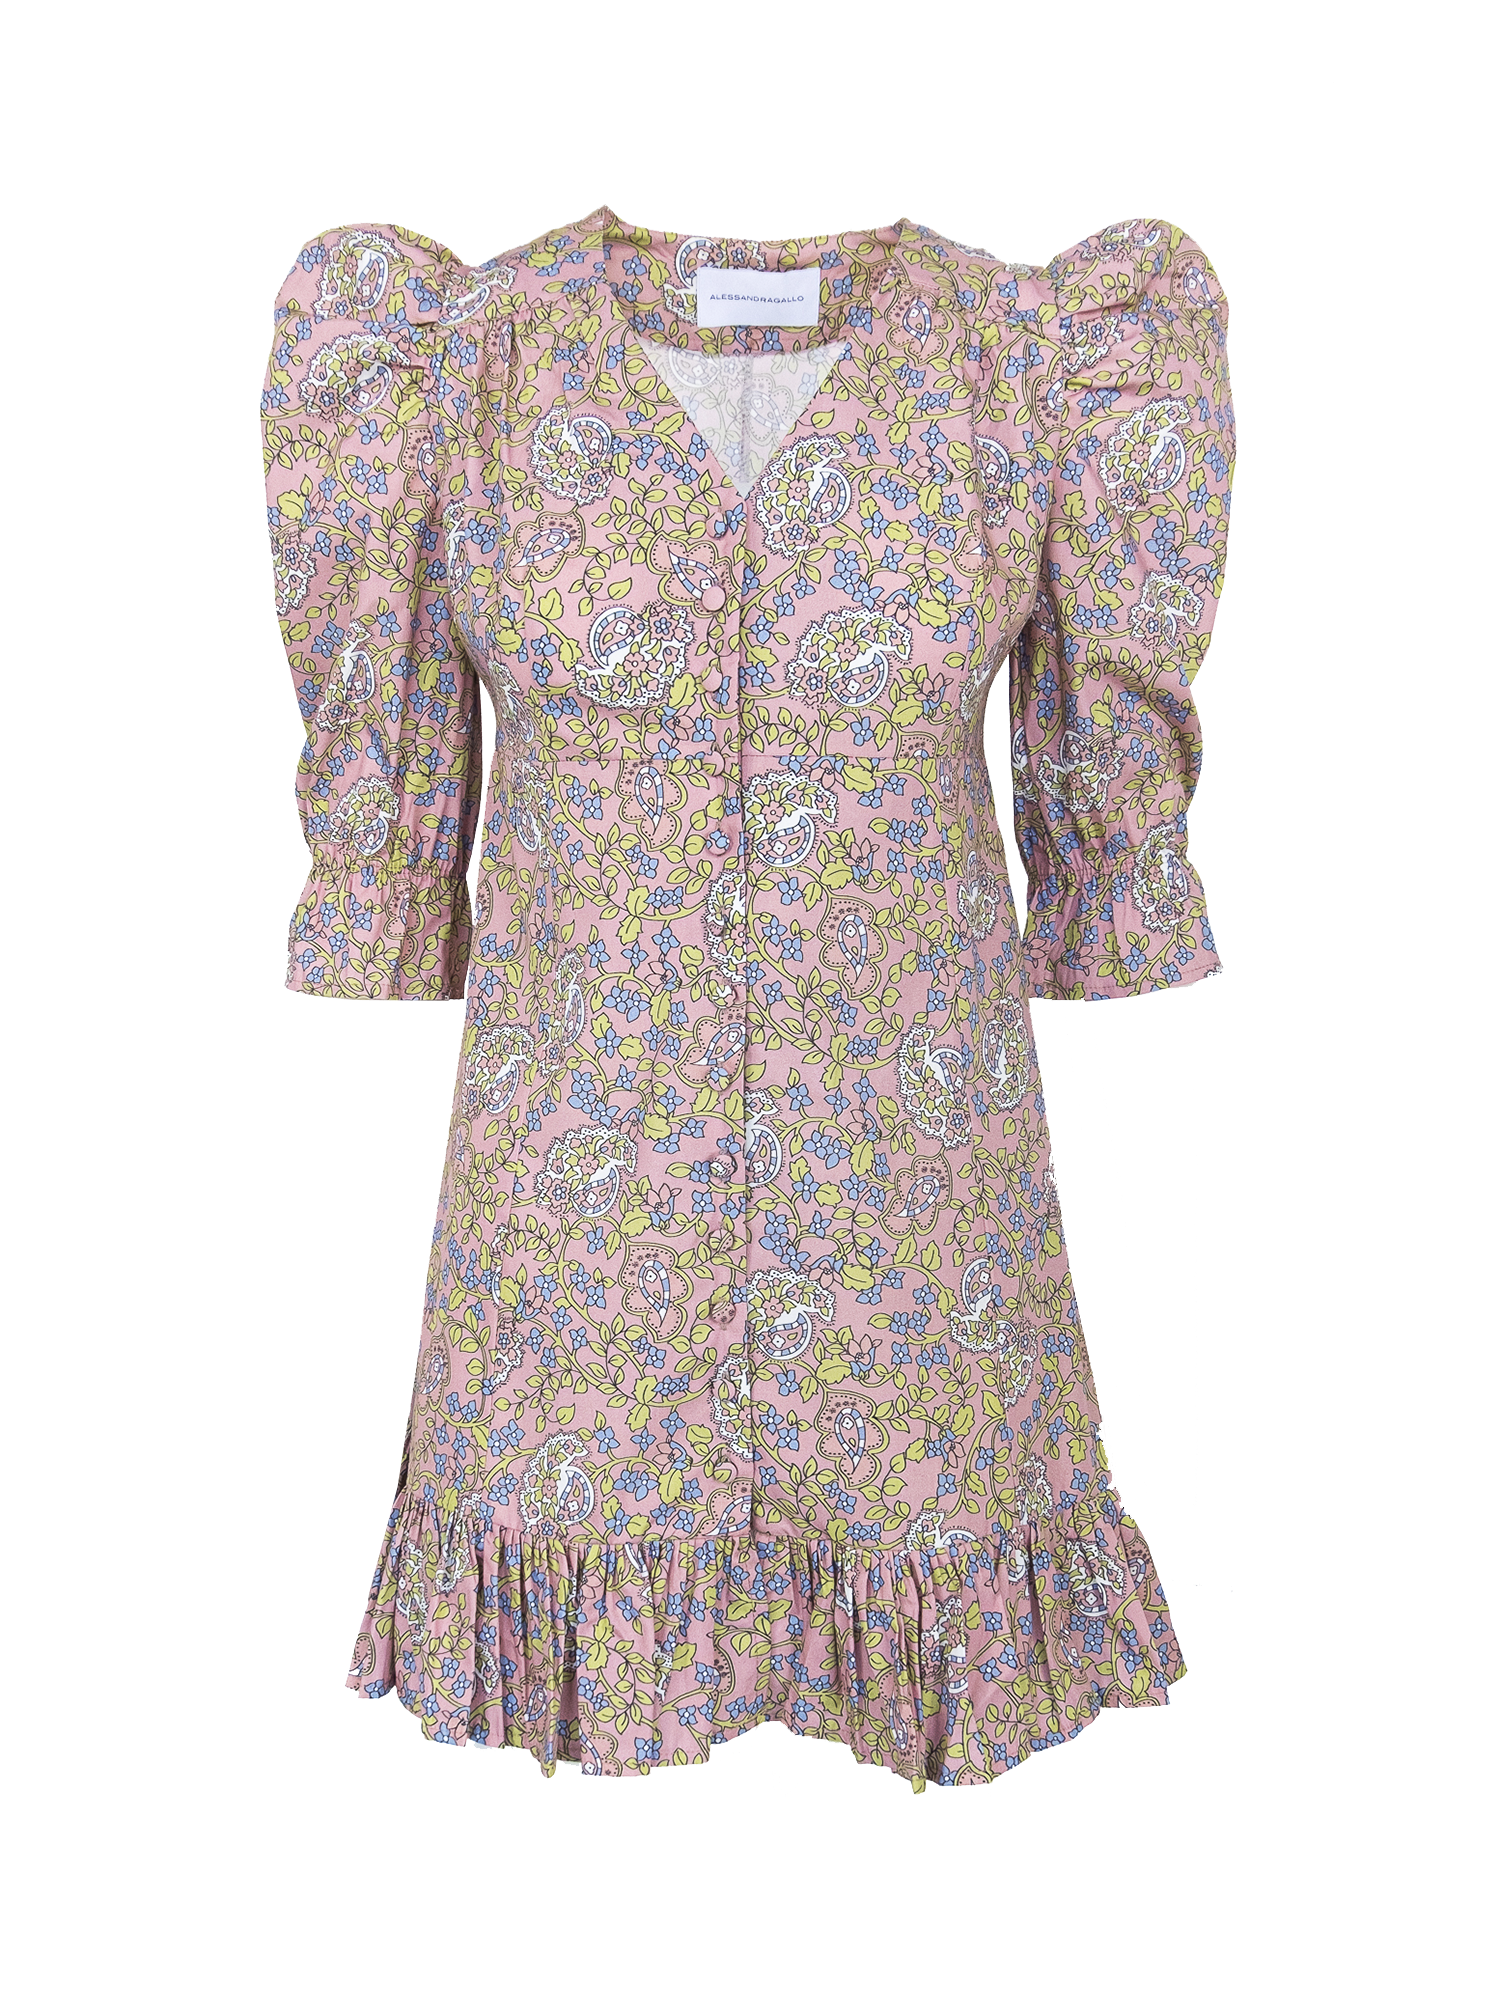 DALIA - short cotton dress with Butchart pattern